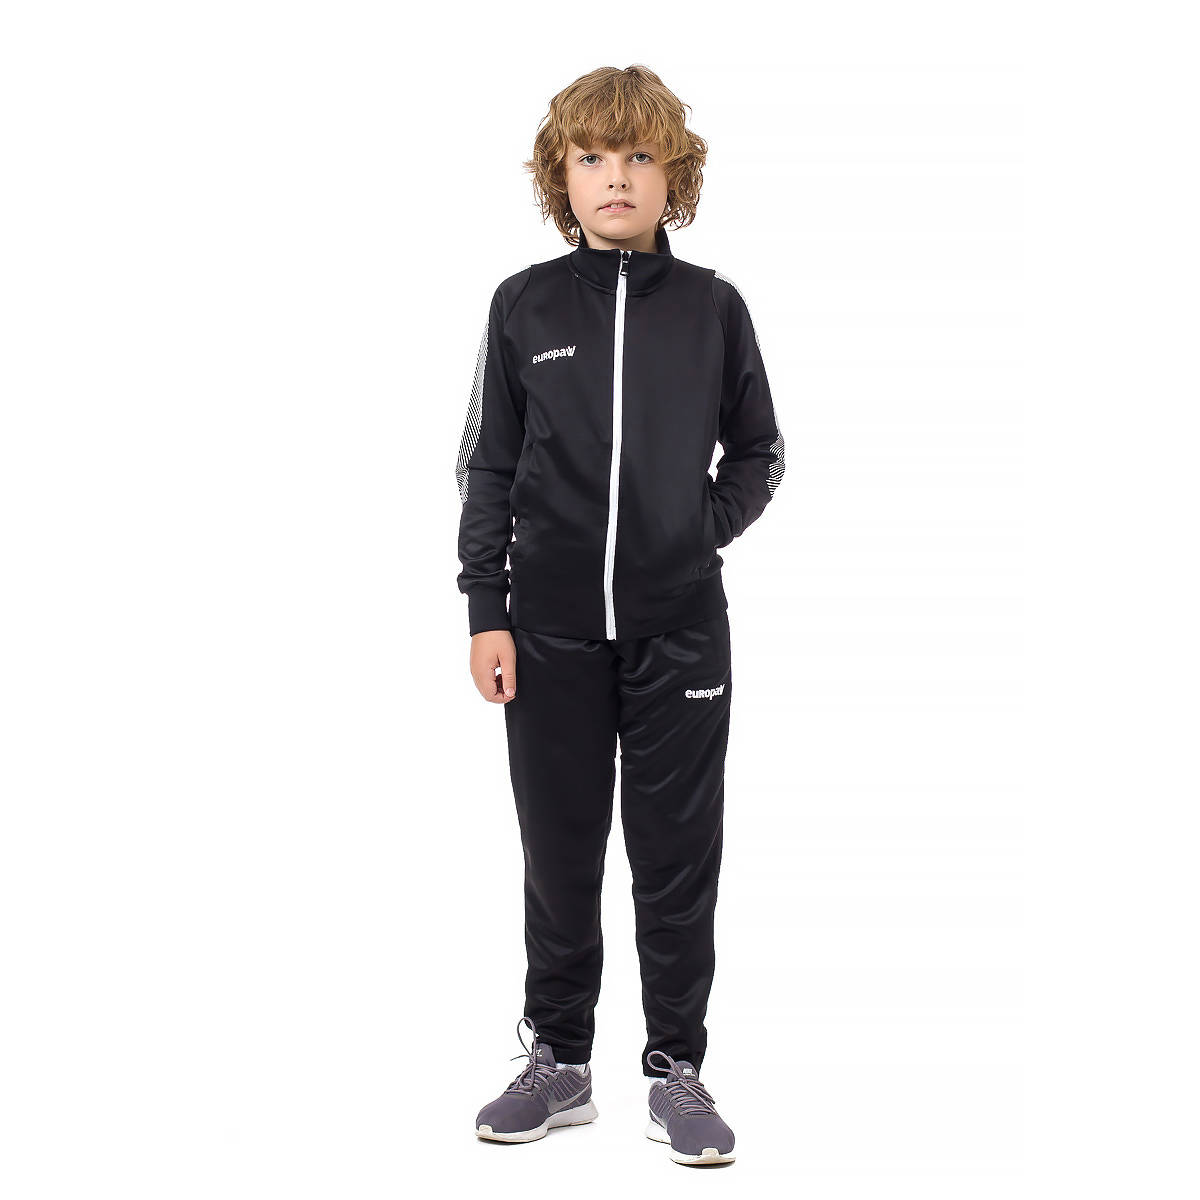 Спортивний костюм для дітей Europaw Limber Up Kid 2101 Long zipper